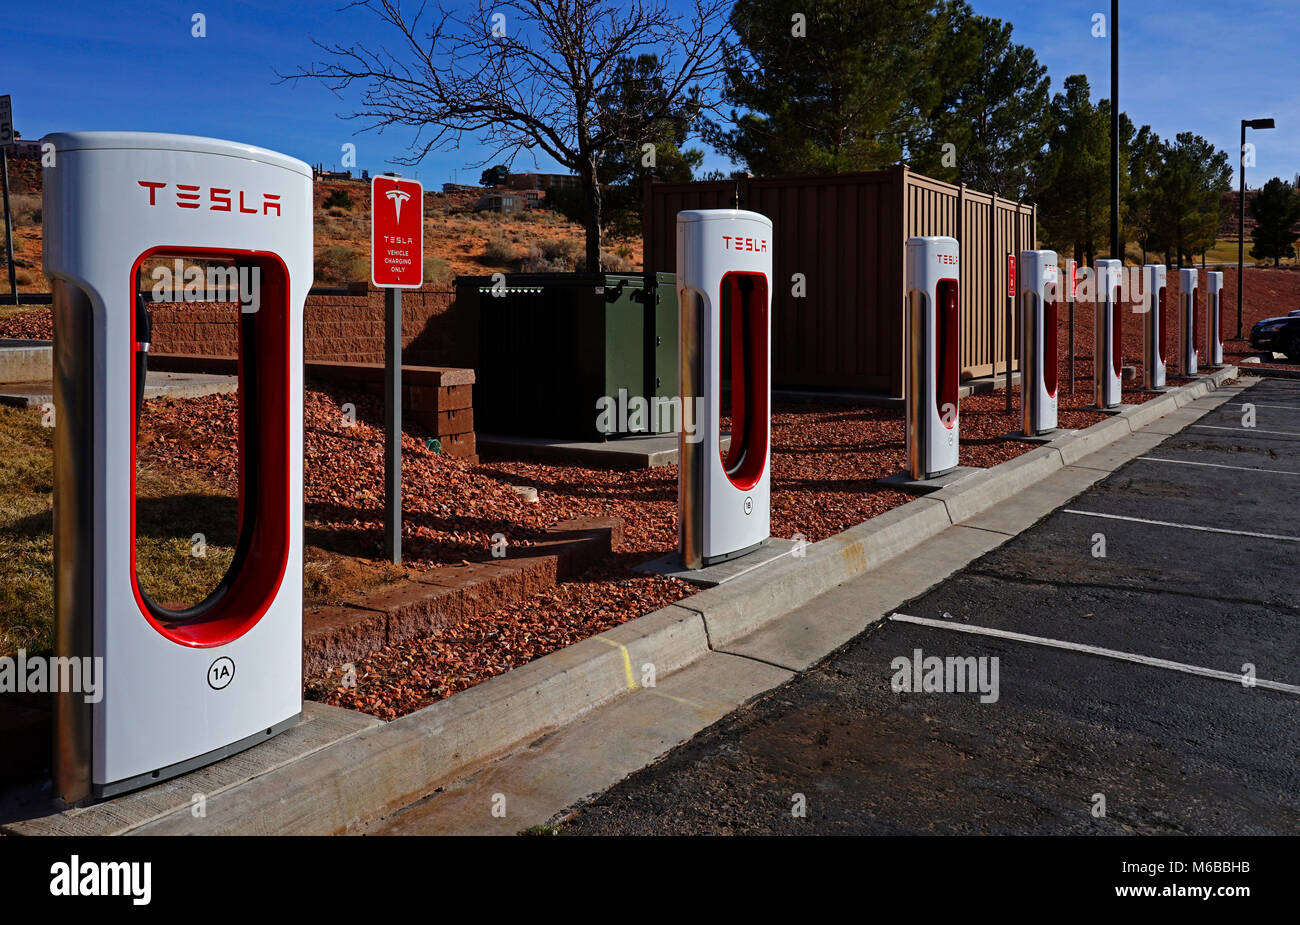 Points de recharge pour voitures électriques Tesla dans le parking de l'hôtel,Page,Arizona,USA Banque D'Images